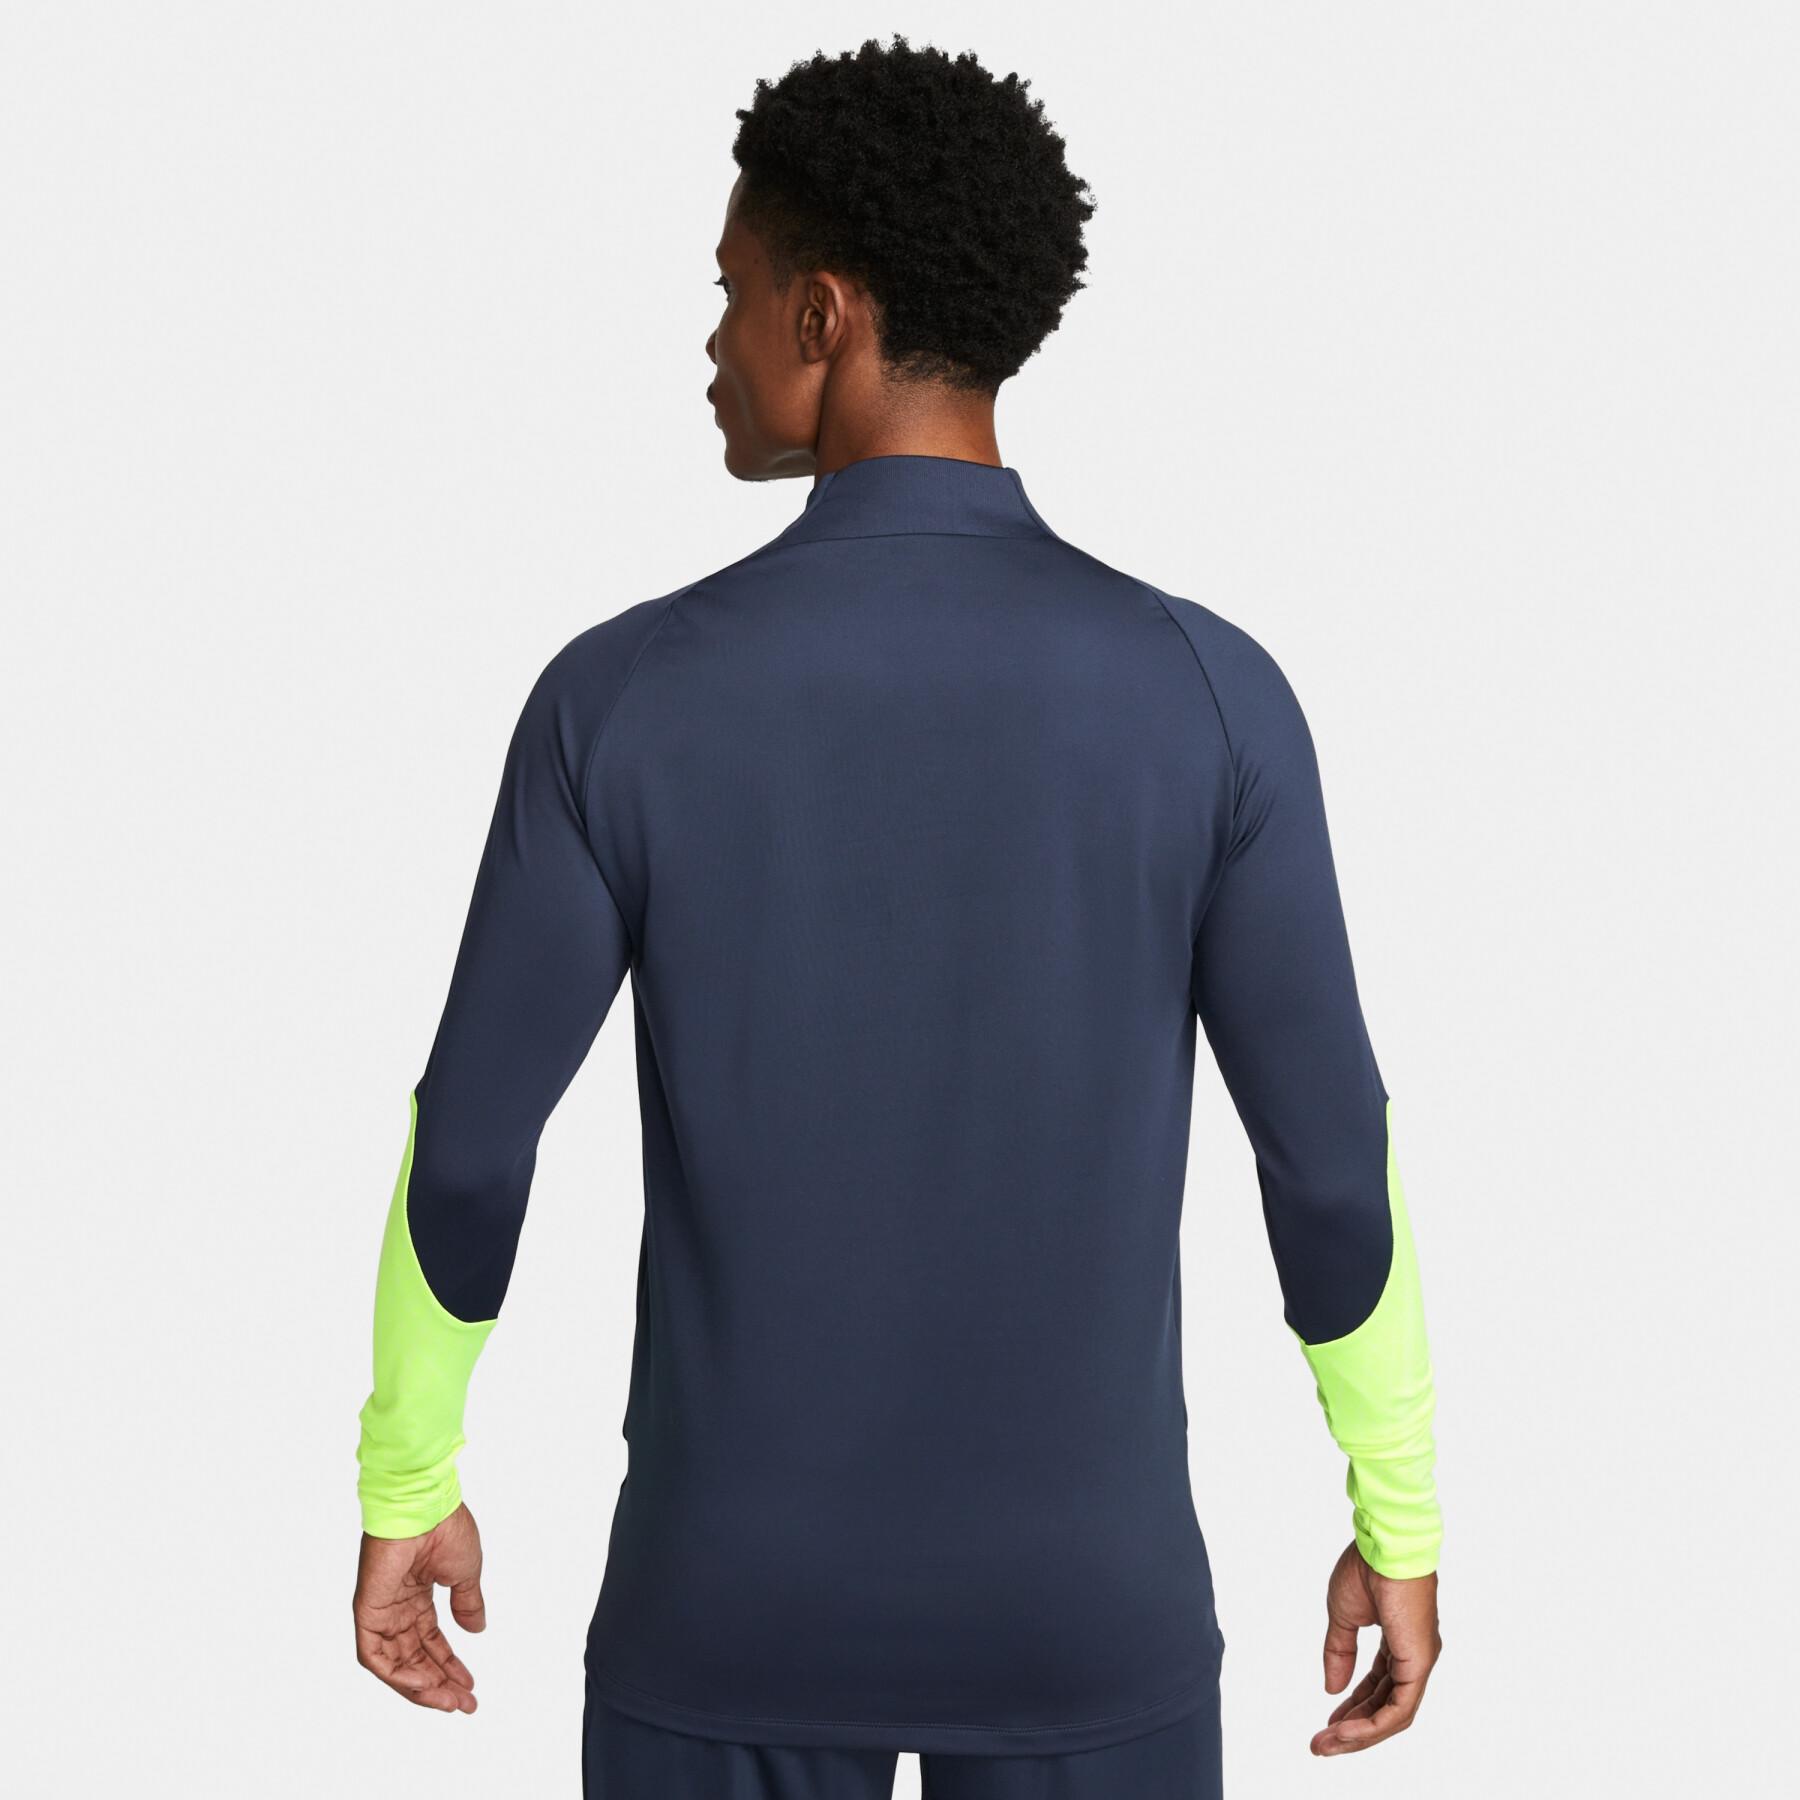 Long sleeve jersey Nike Dri-FIT Strike